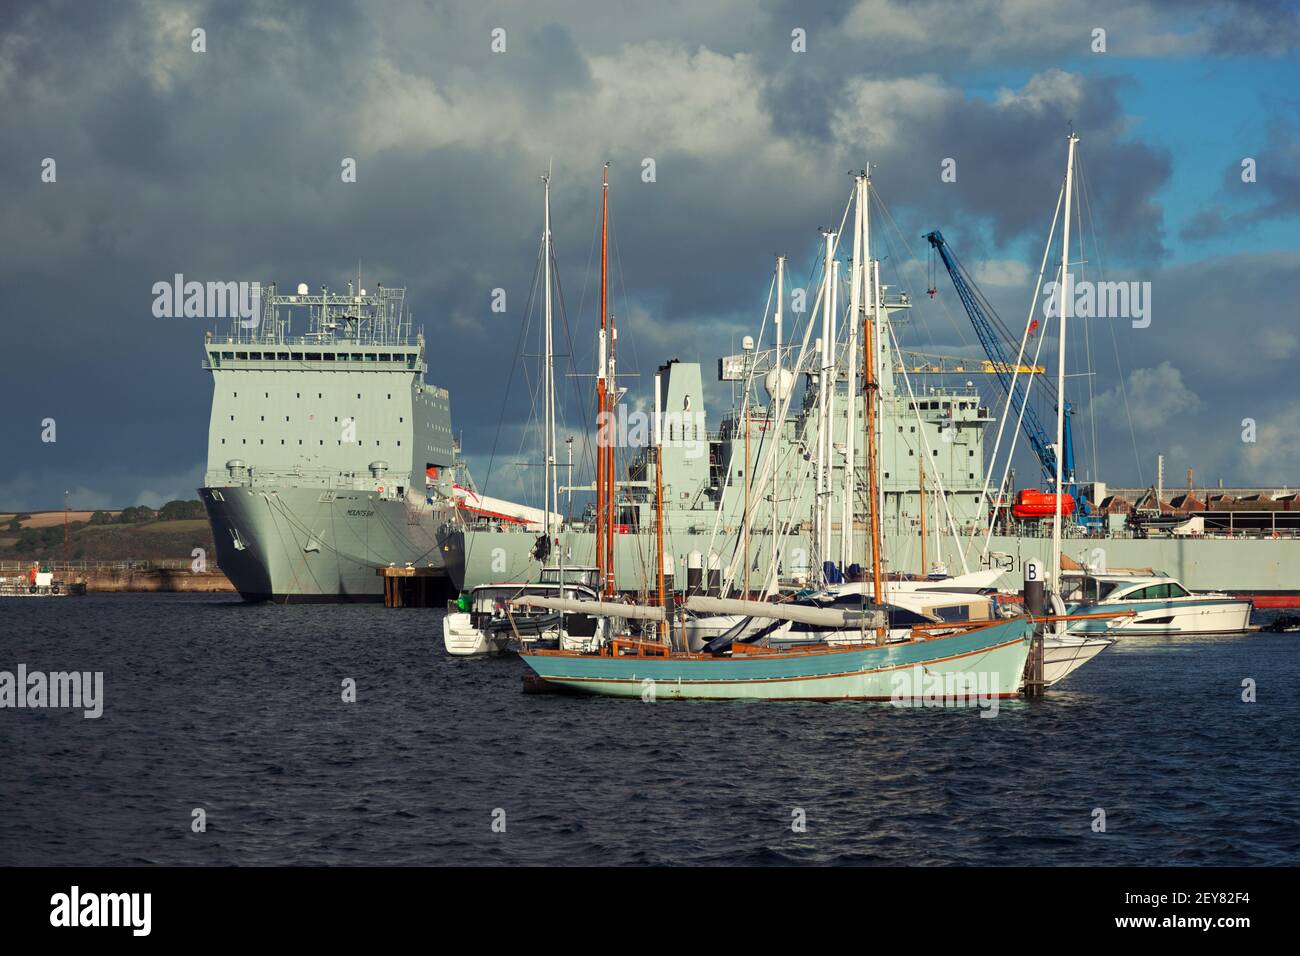 El barco de apoyo de RFA Mounts Bay amonst otros barcos en Las aguas seguras del puerto de Falmouth Foto de stock